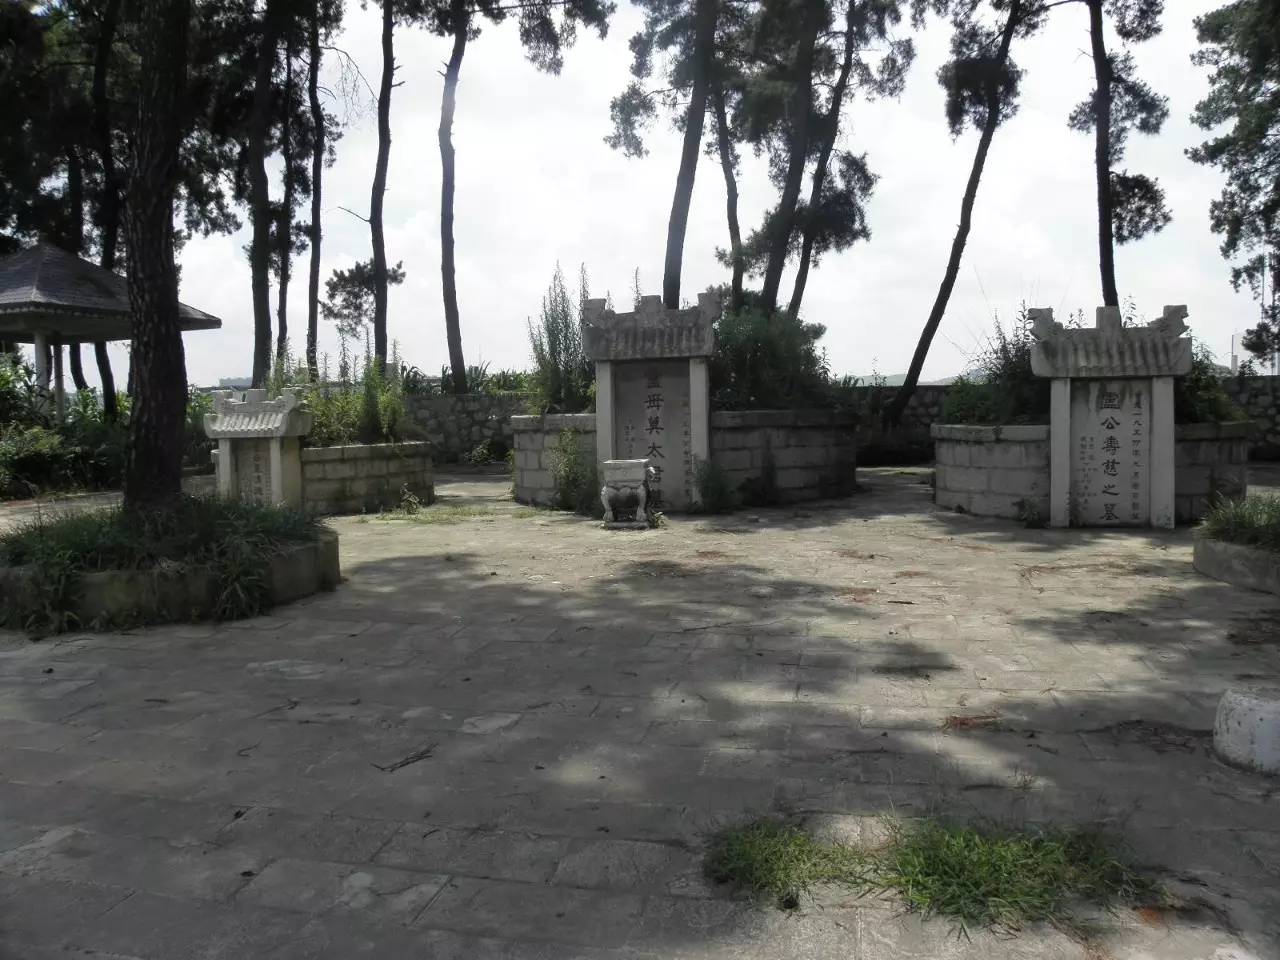 卢氏陵园(卢焘烈士墓)位于贵阳市乌当区(现观山湖区)野鸭乡新寨